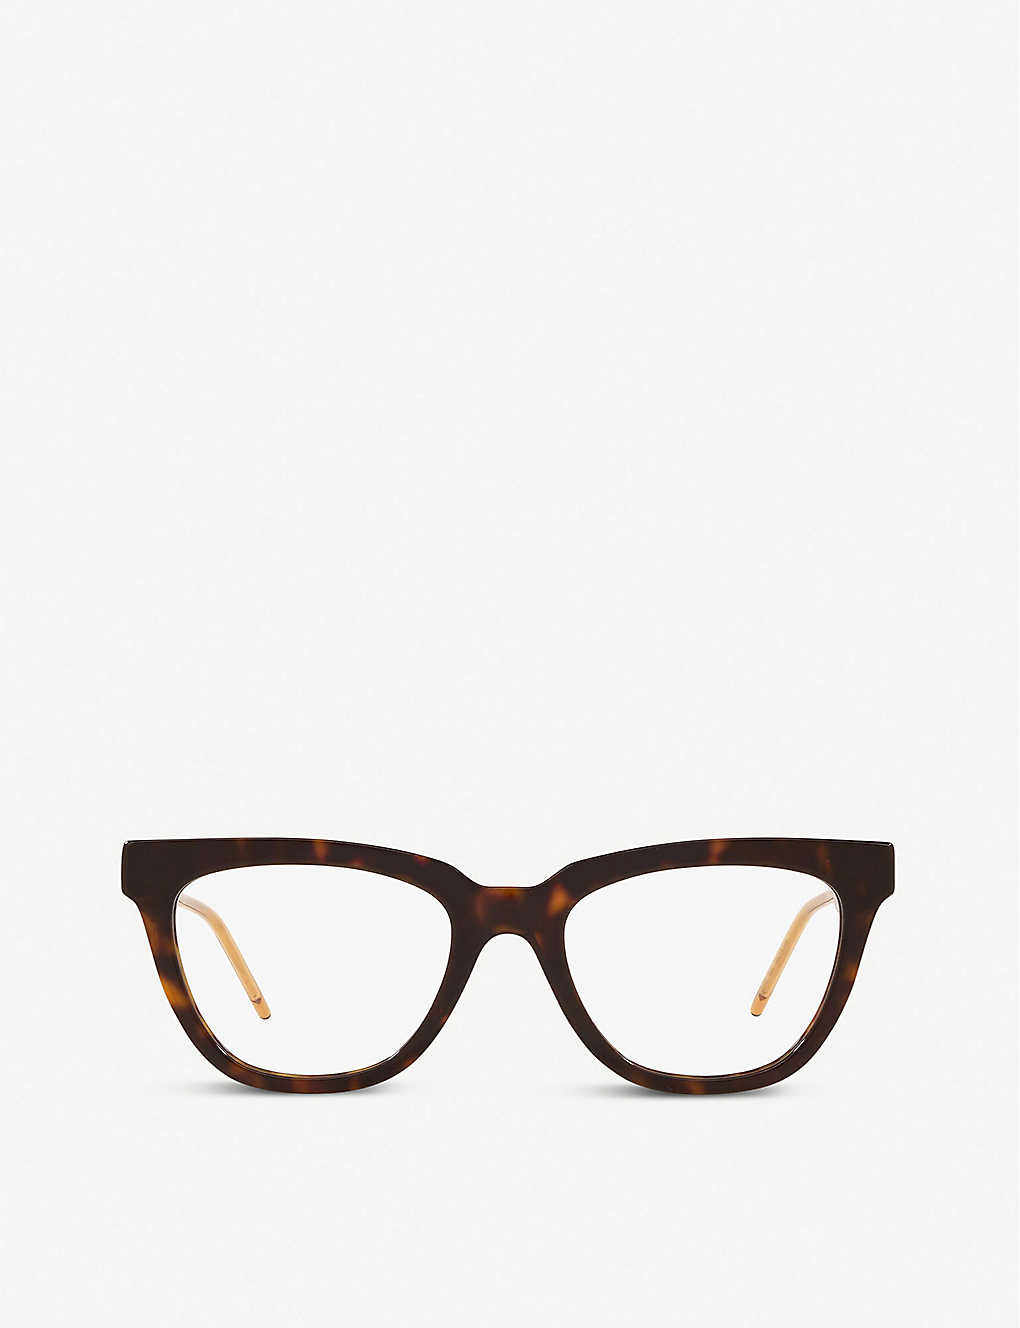 GG0601O cat-eye glasses(8736165)